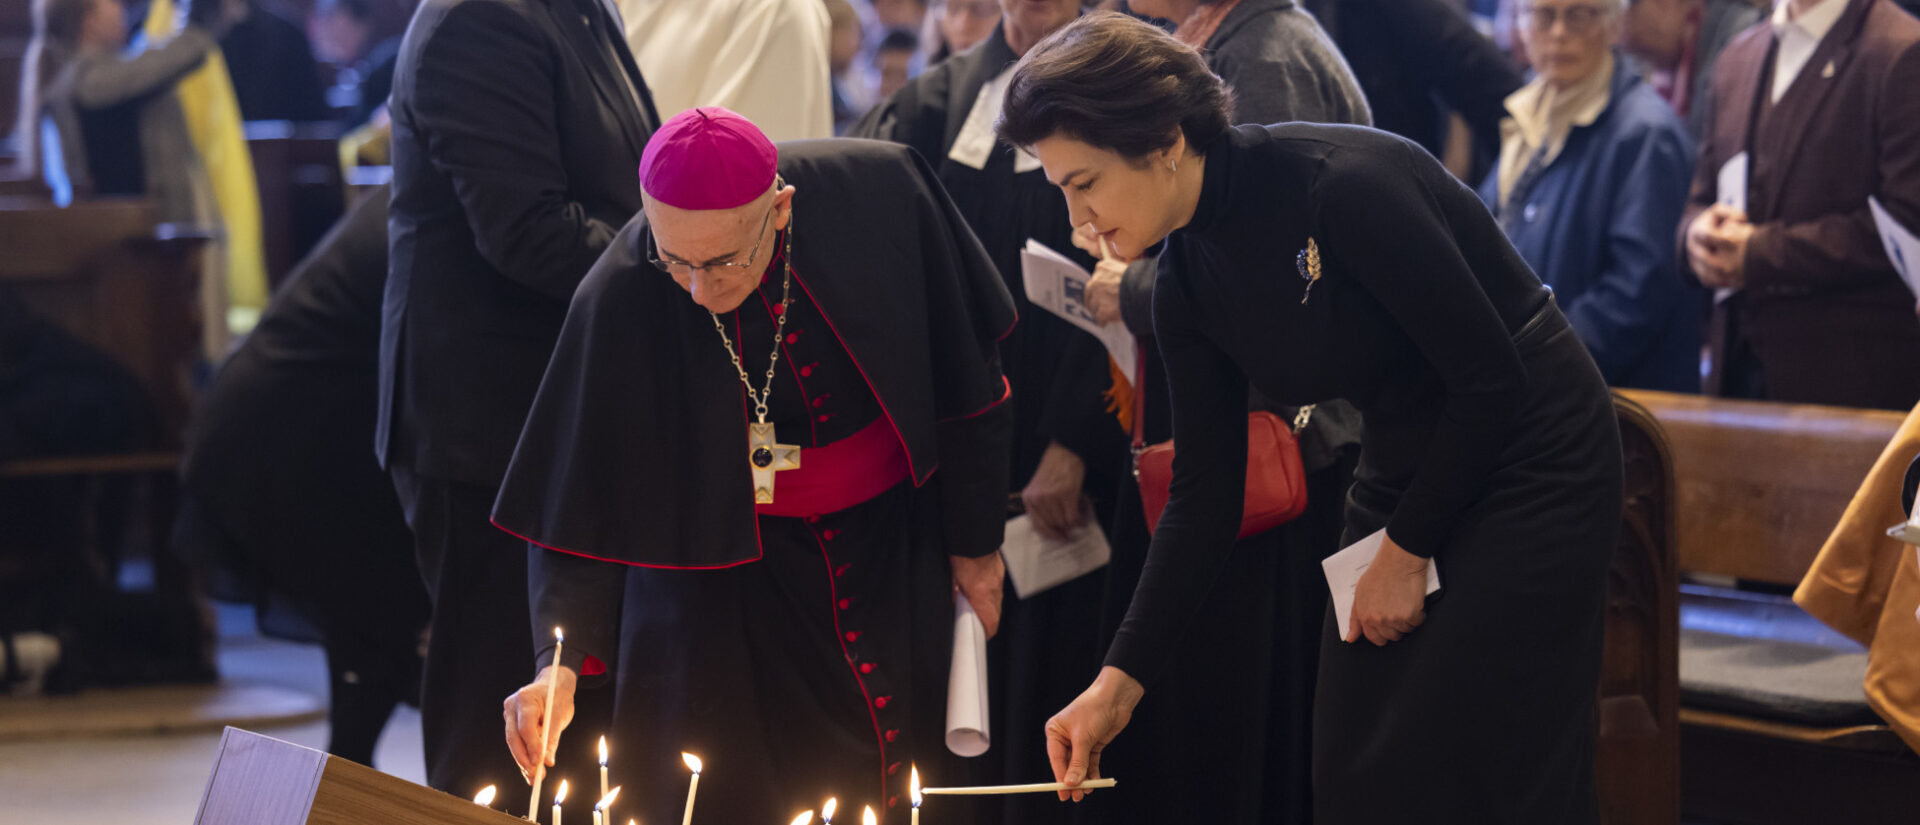 Bischof Joseph Bonnmain und die ukrainische Botschafterin Venediktova Iryna beim Friedensgebet in Bern.